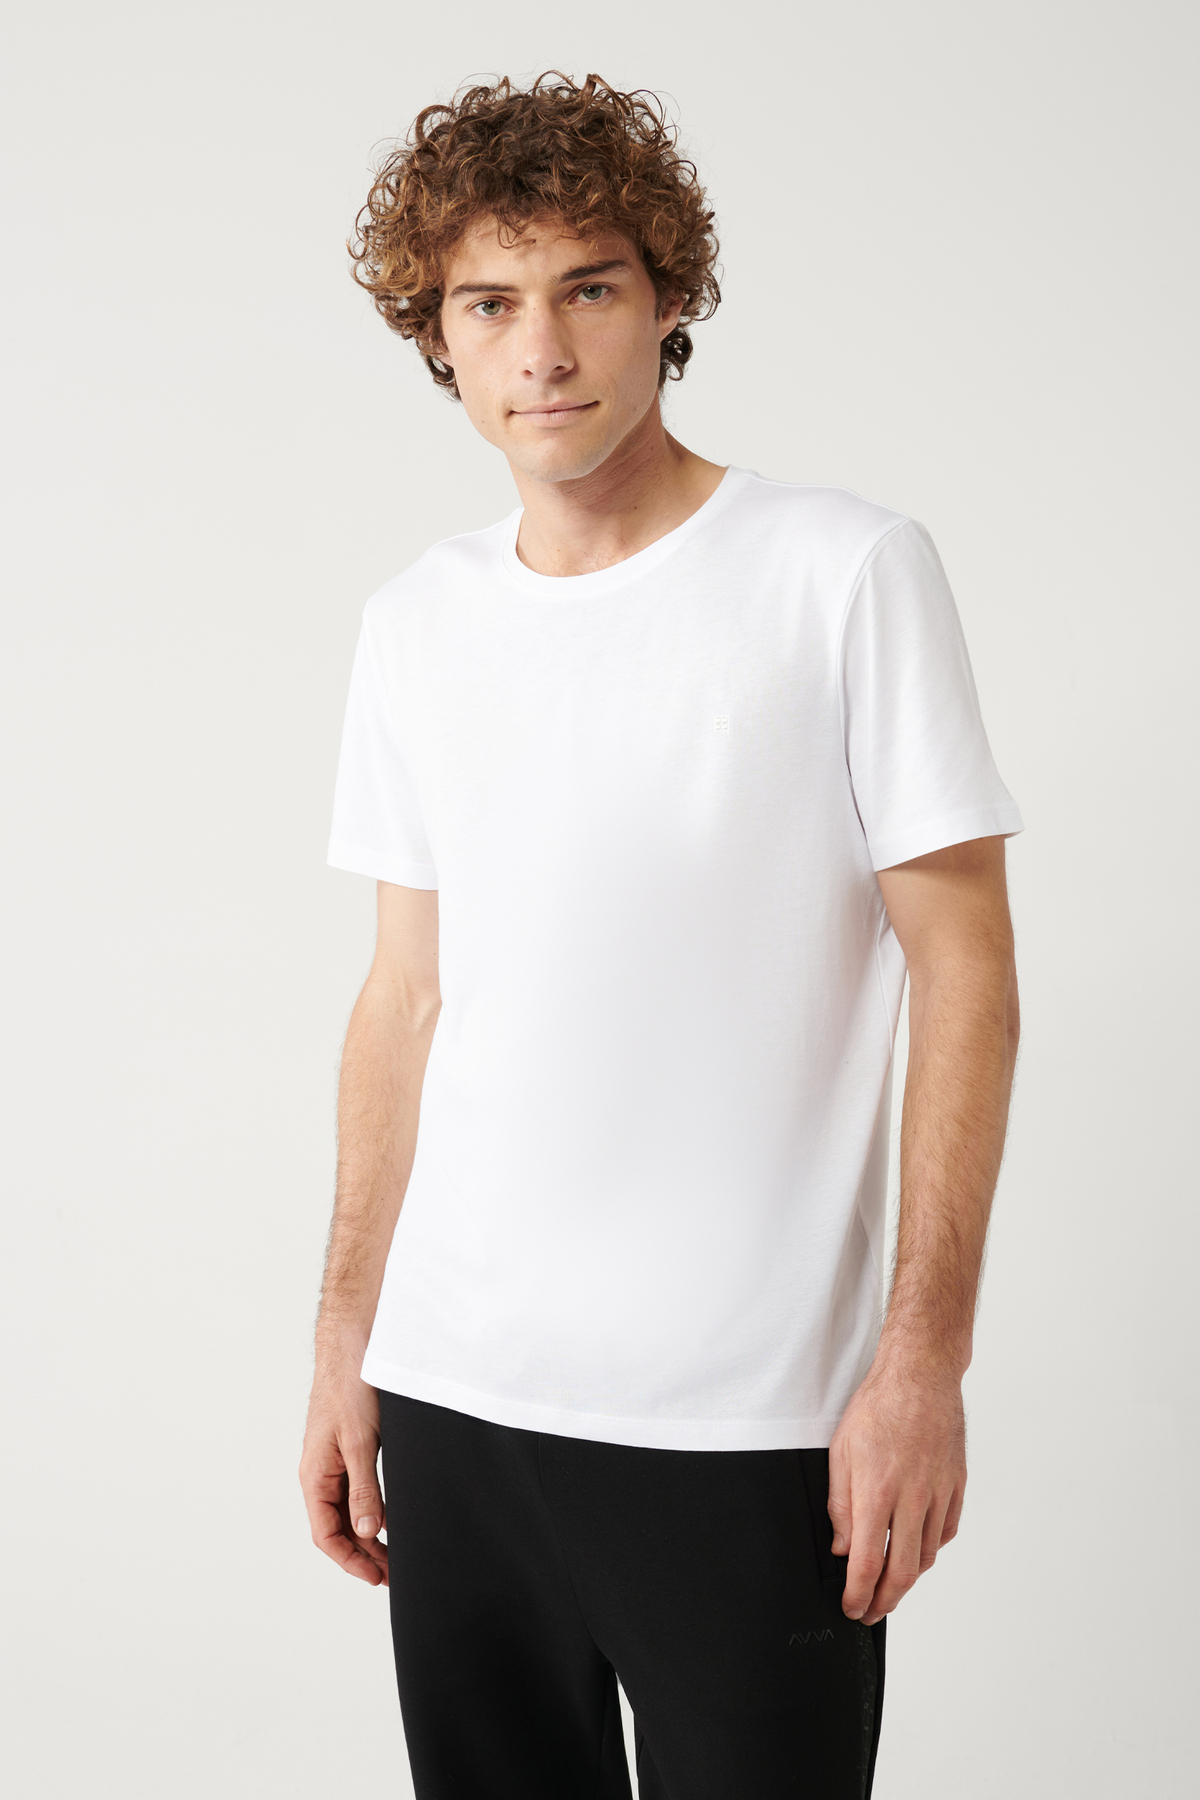 Avva Men's White Ultrasoft Crew Neck Plain Regular Fit Modal T-shirt